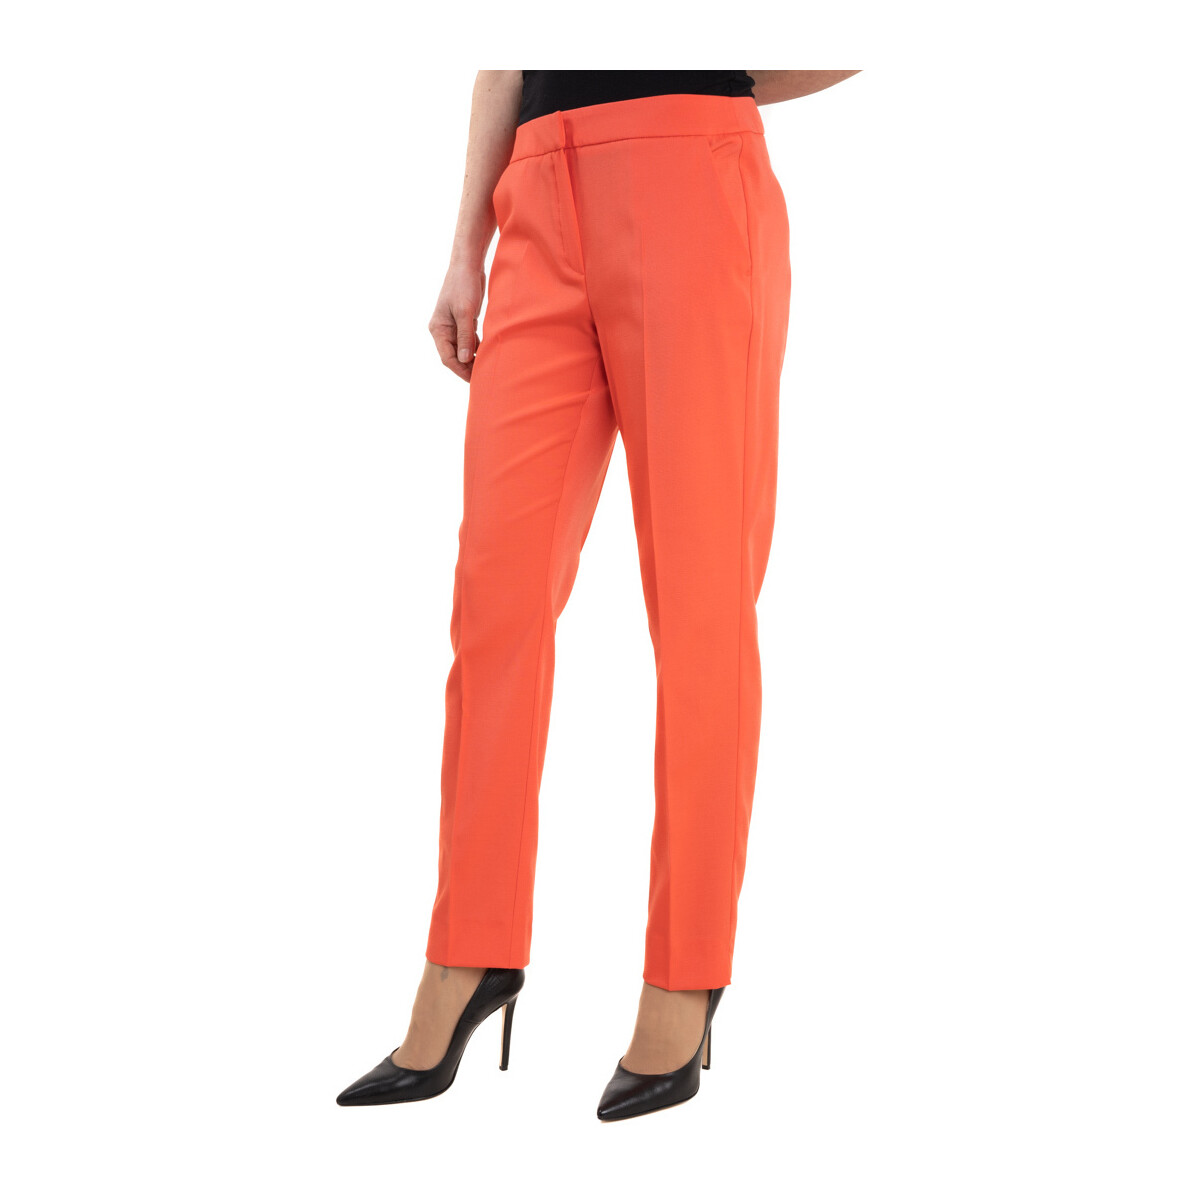 Vêtements Femme Pantalons Linea Emme Marella 23513120 Orange